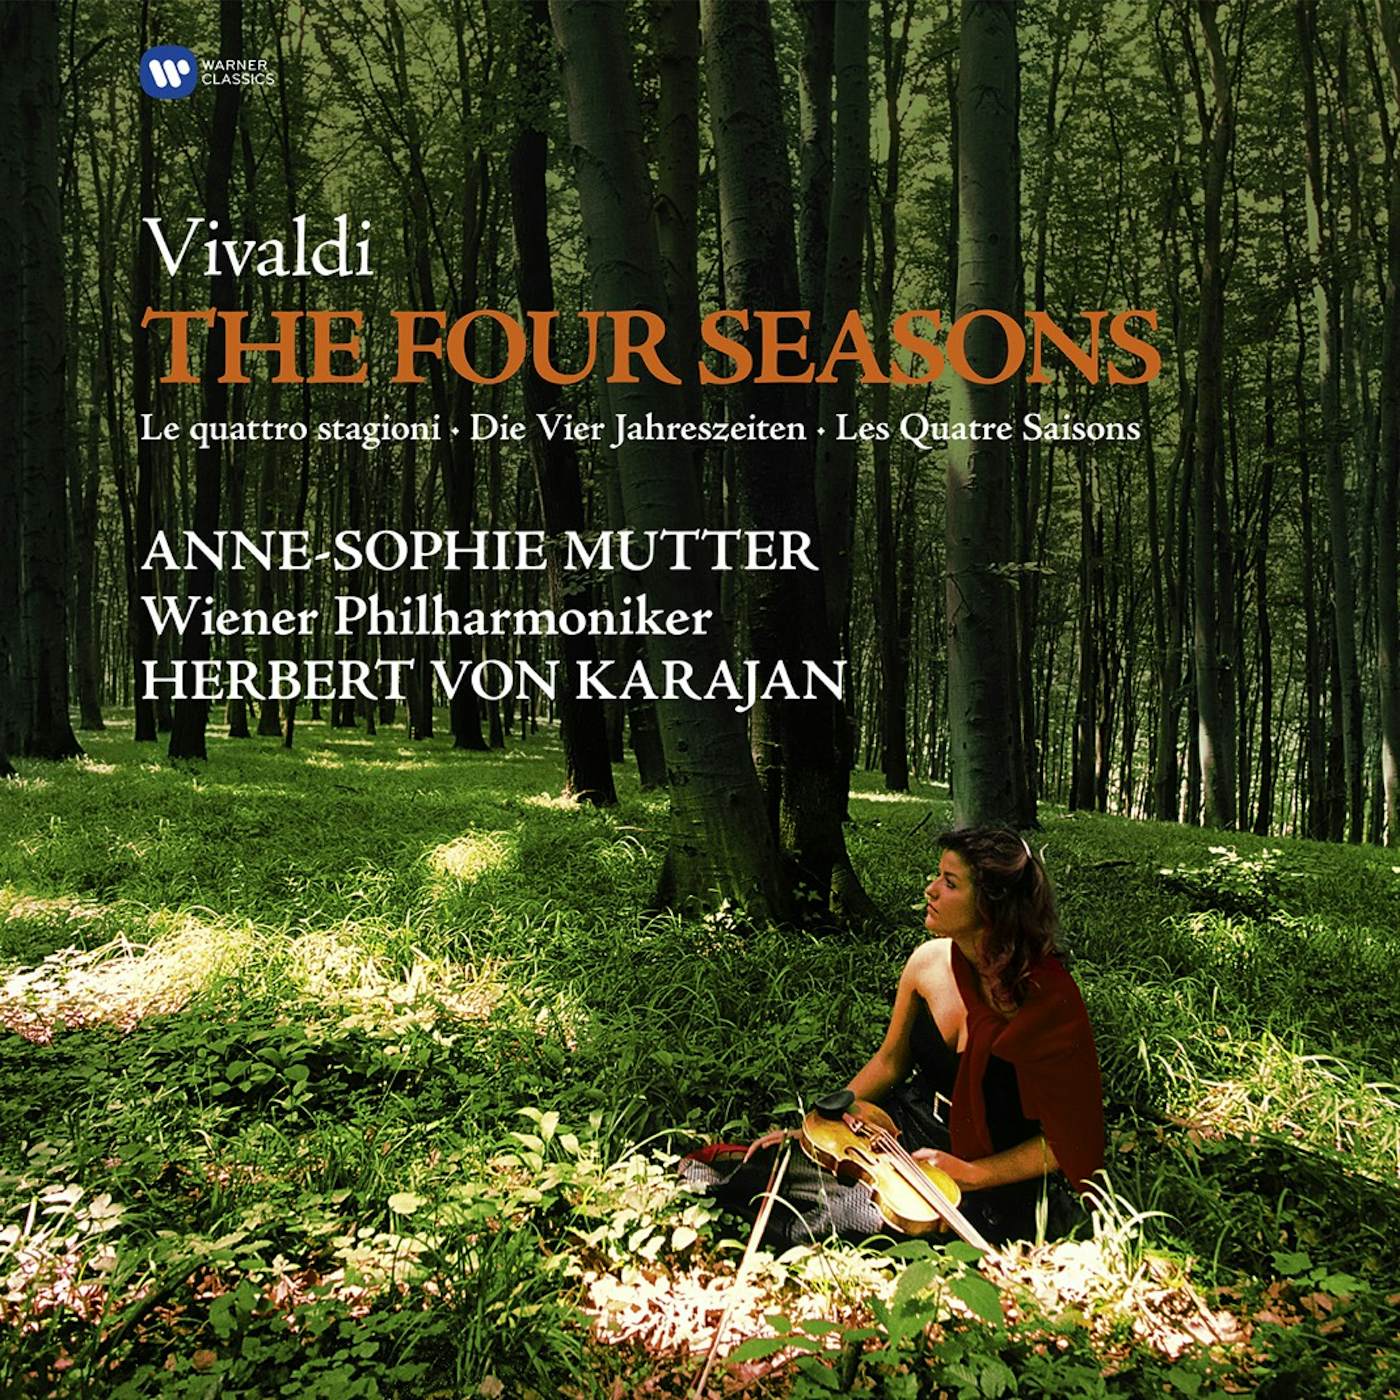 Anne-Sophie Mutter Vivaldi: Four Seasons Vinyl Record